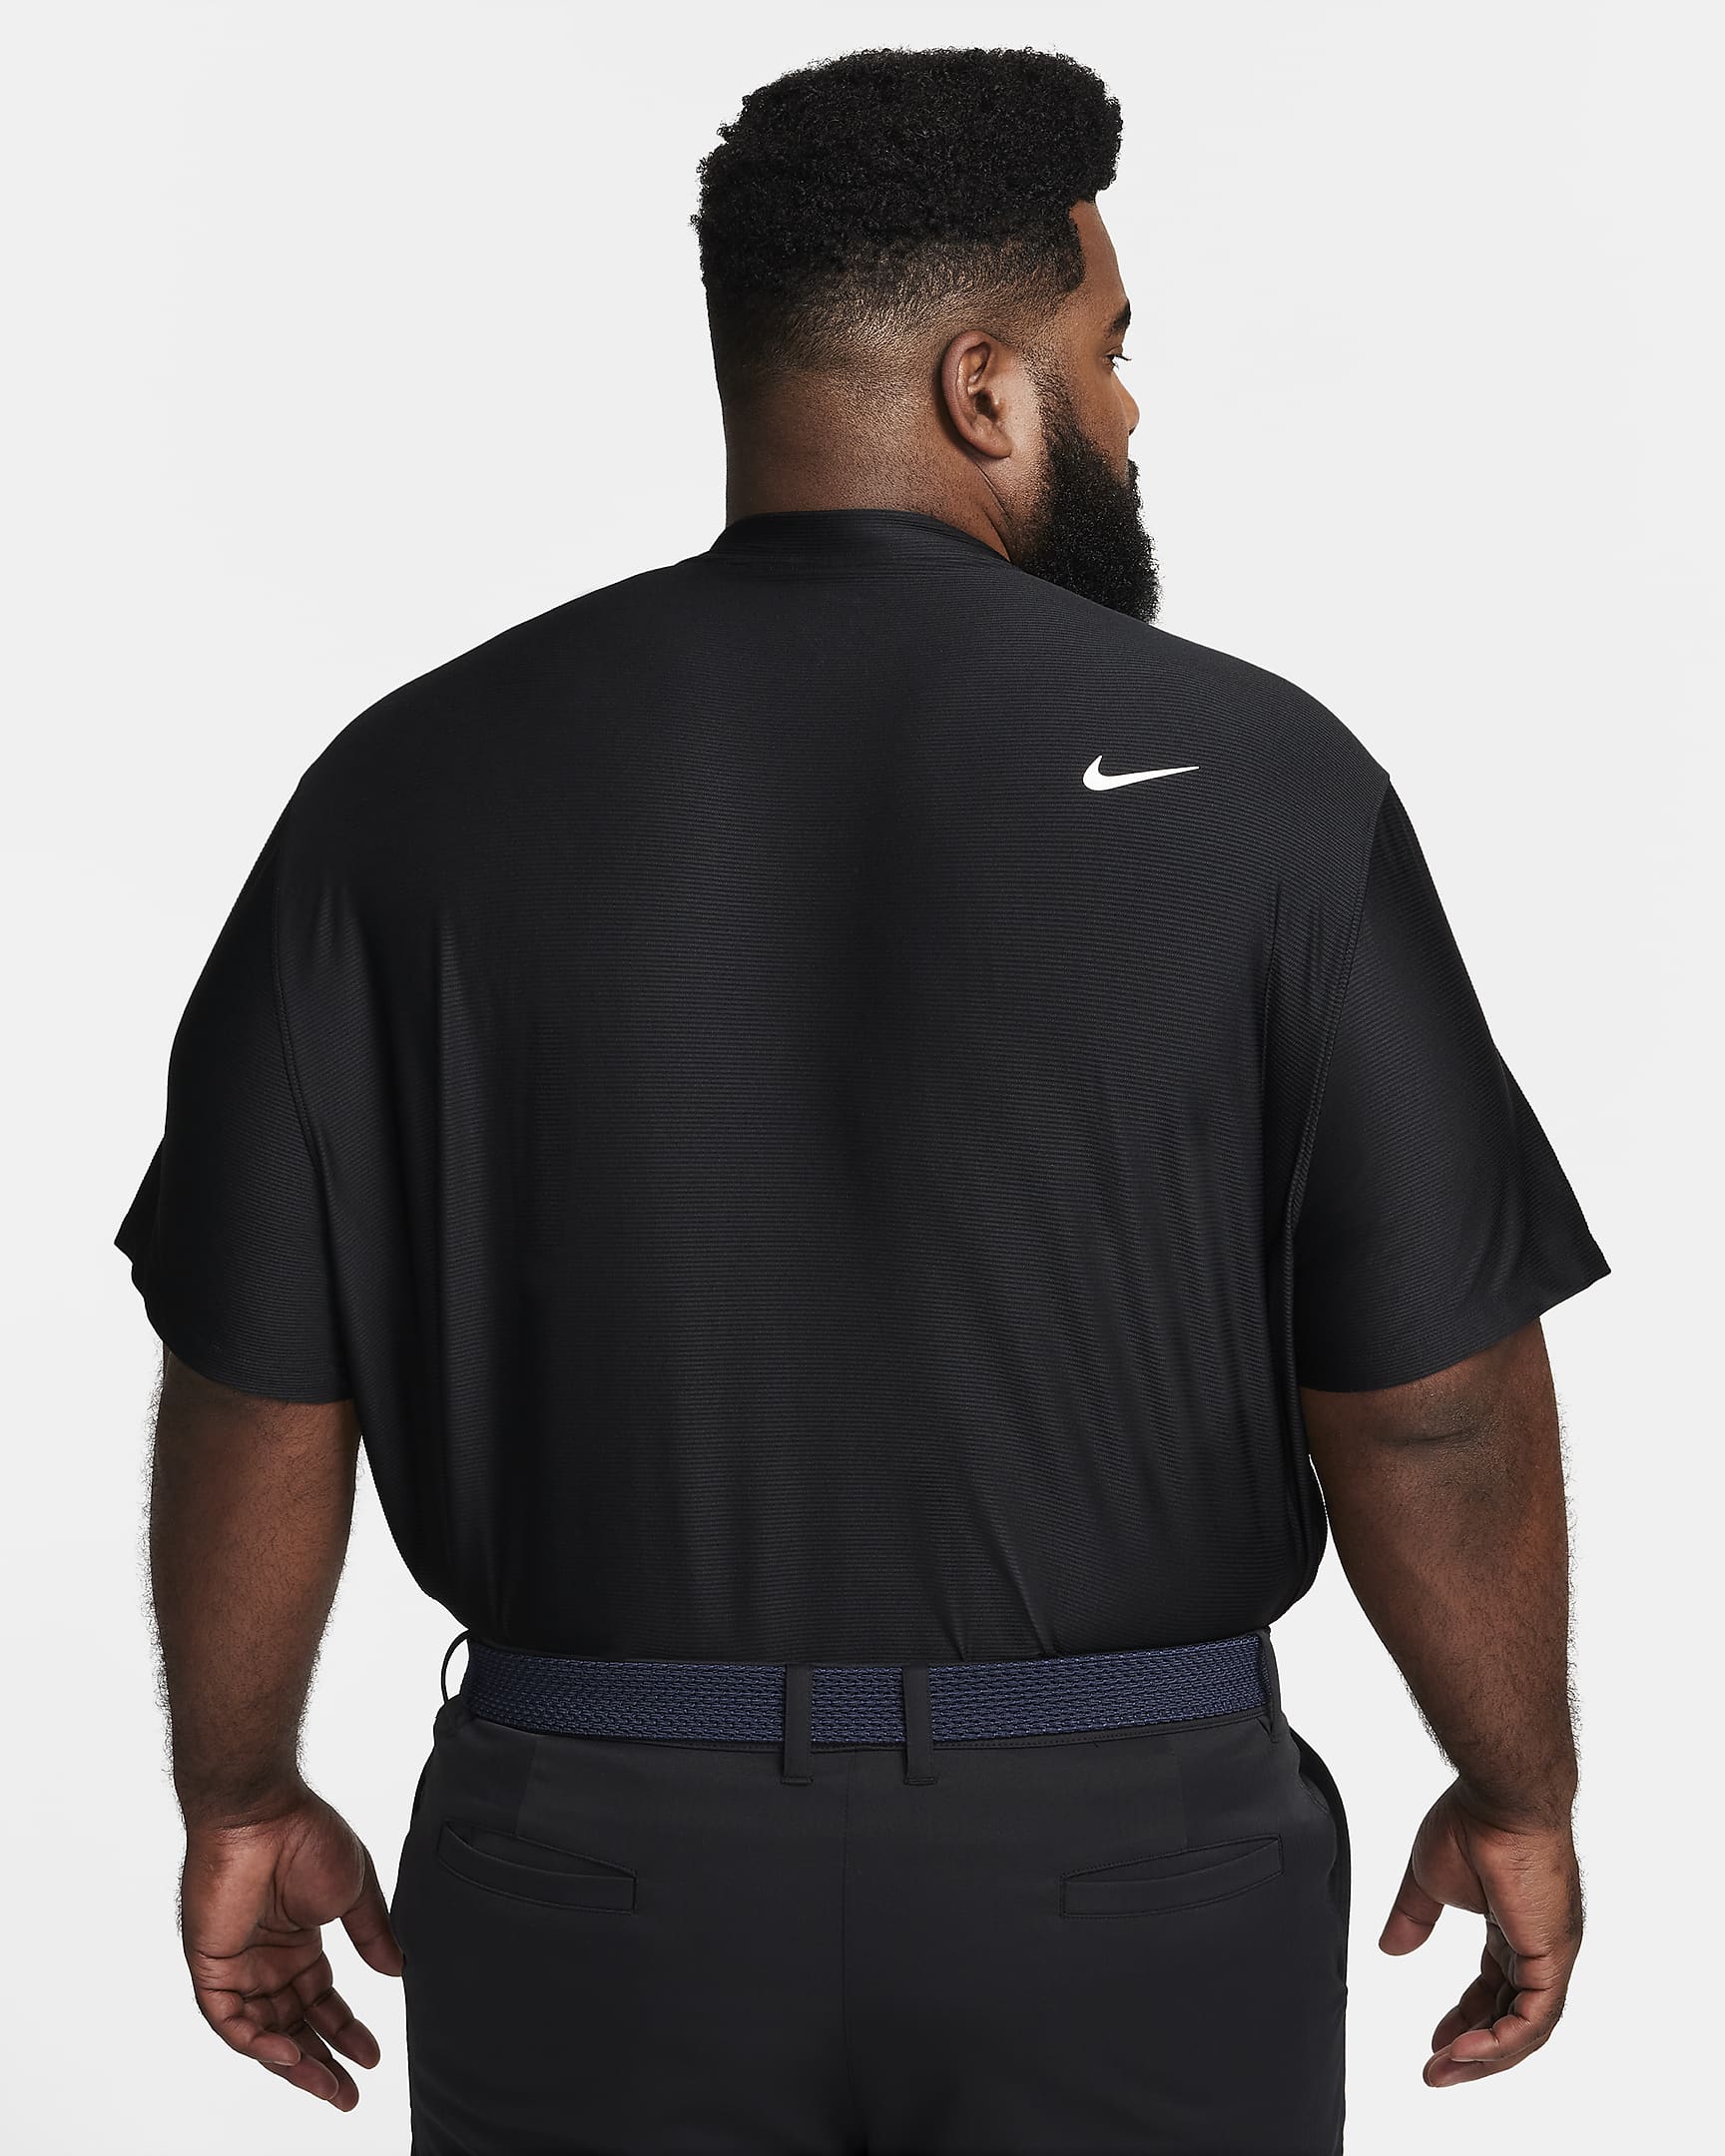 Nike Tour Men's Dri-FIT Golf Polo - Black/White